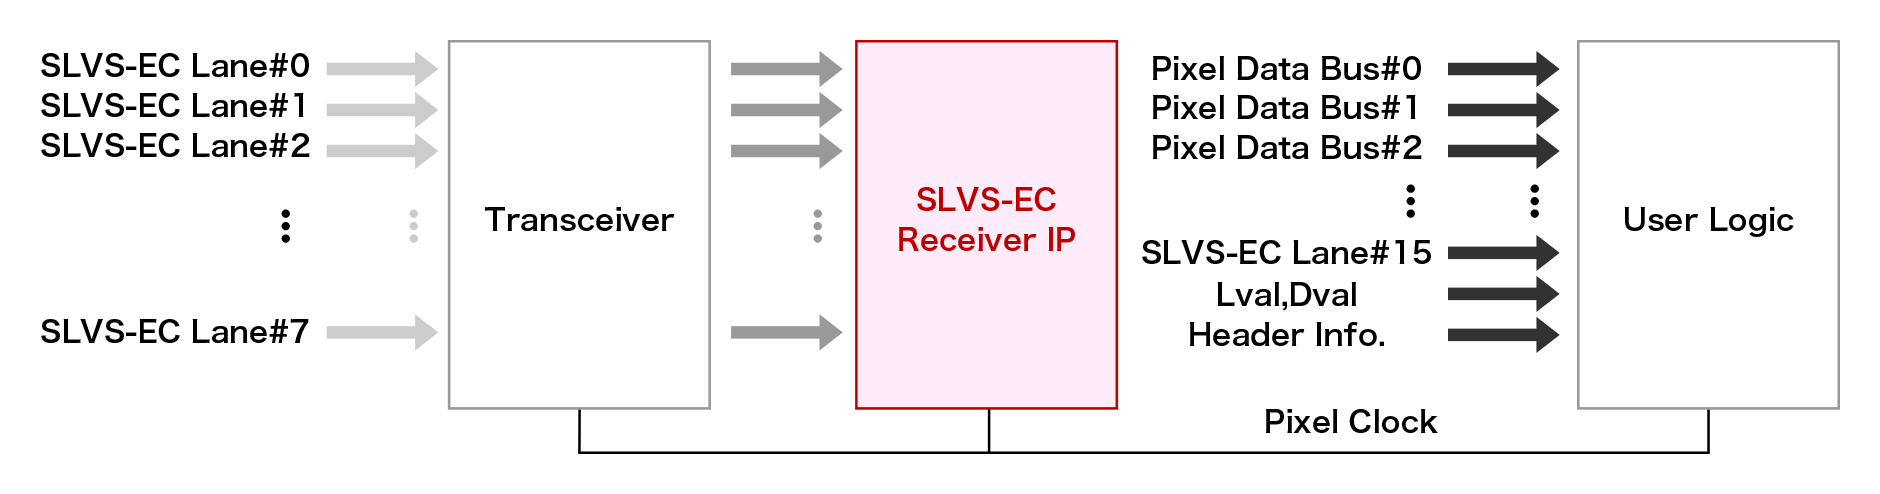 SLVS-EC Receiver IPの図